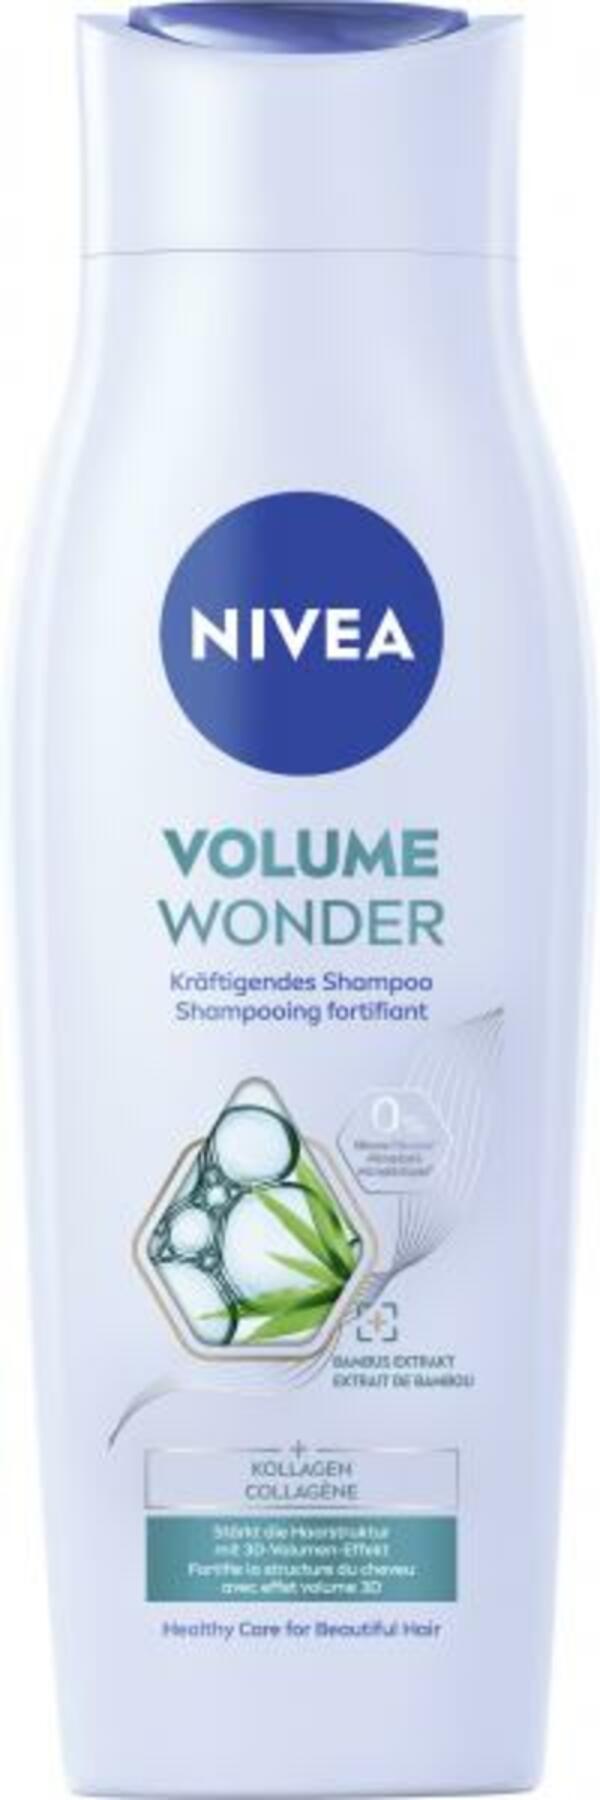 Bild 1 von Nivea Volumen Wonder kräftigendes Shampoo